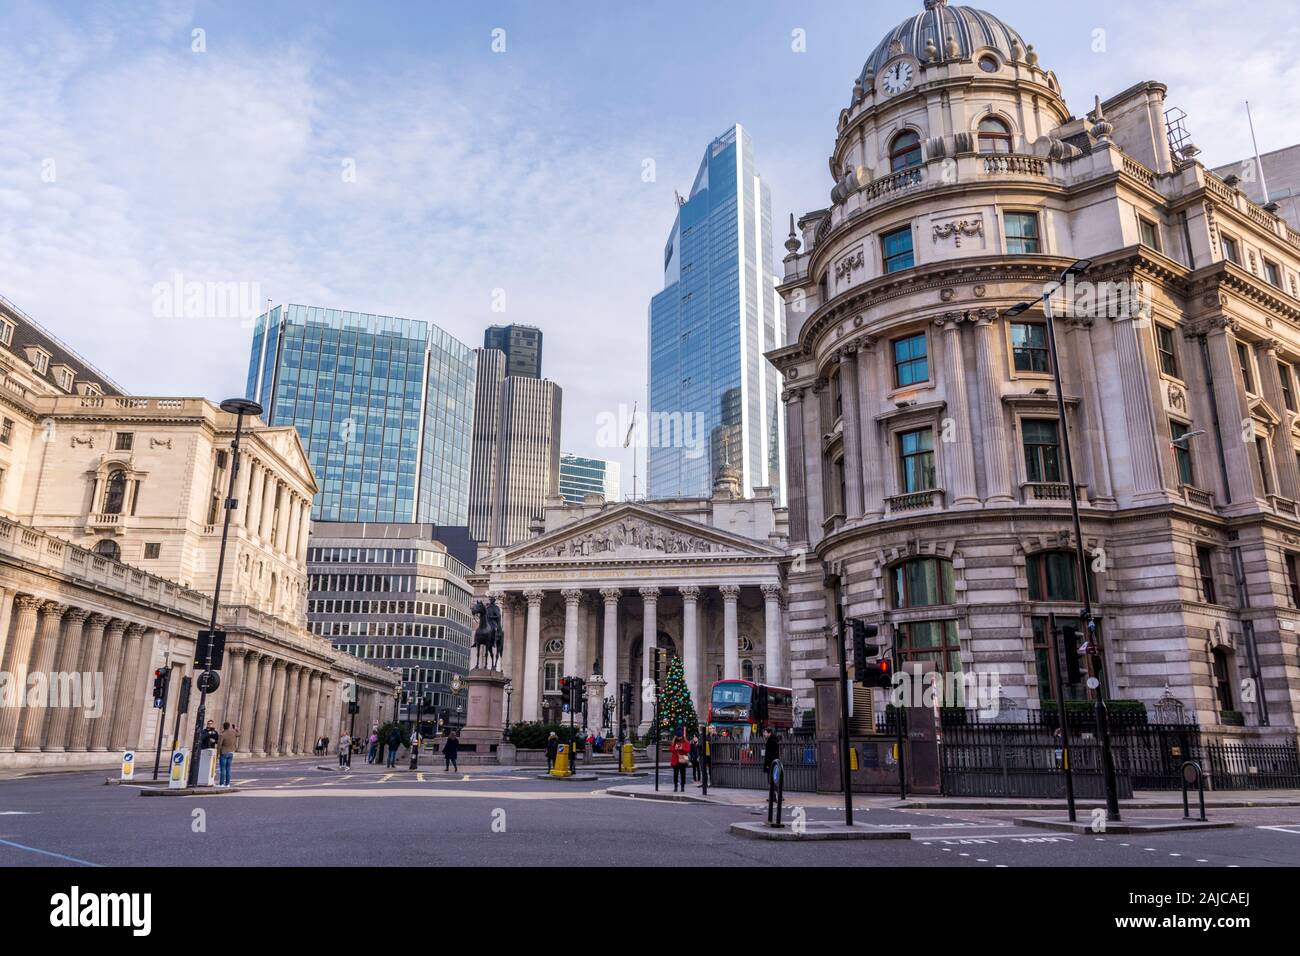 Vue sur la Bourse de Londres, la Bank of London et les bâtiments et rues environnants. Banque D'Images